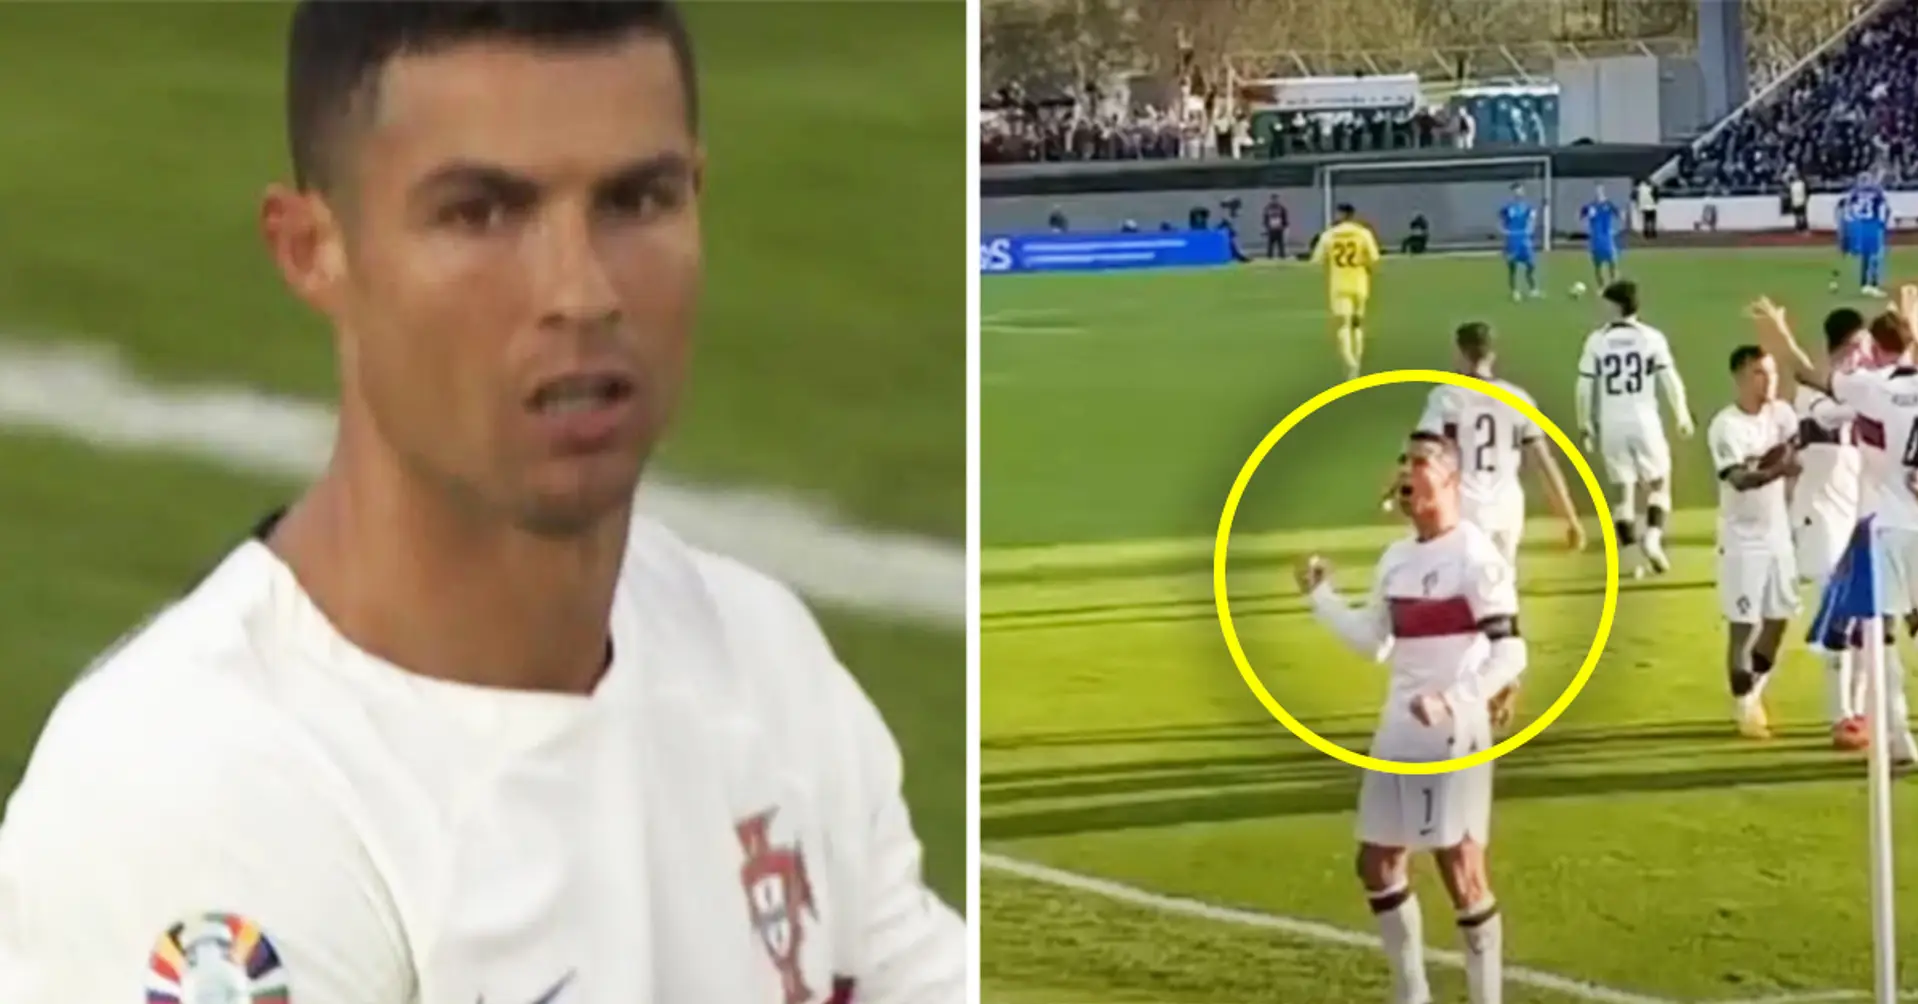 Gesichtet: Ein Fan rannte während des Spiels auf Cristiano Ronaldo zu - schaut euch mal an, was dann passierte